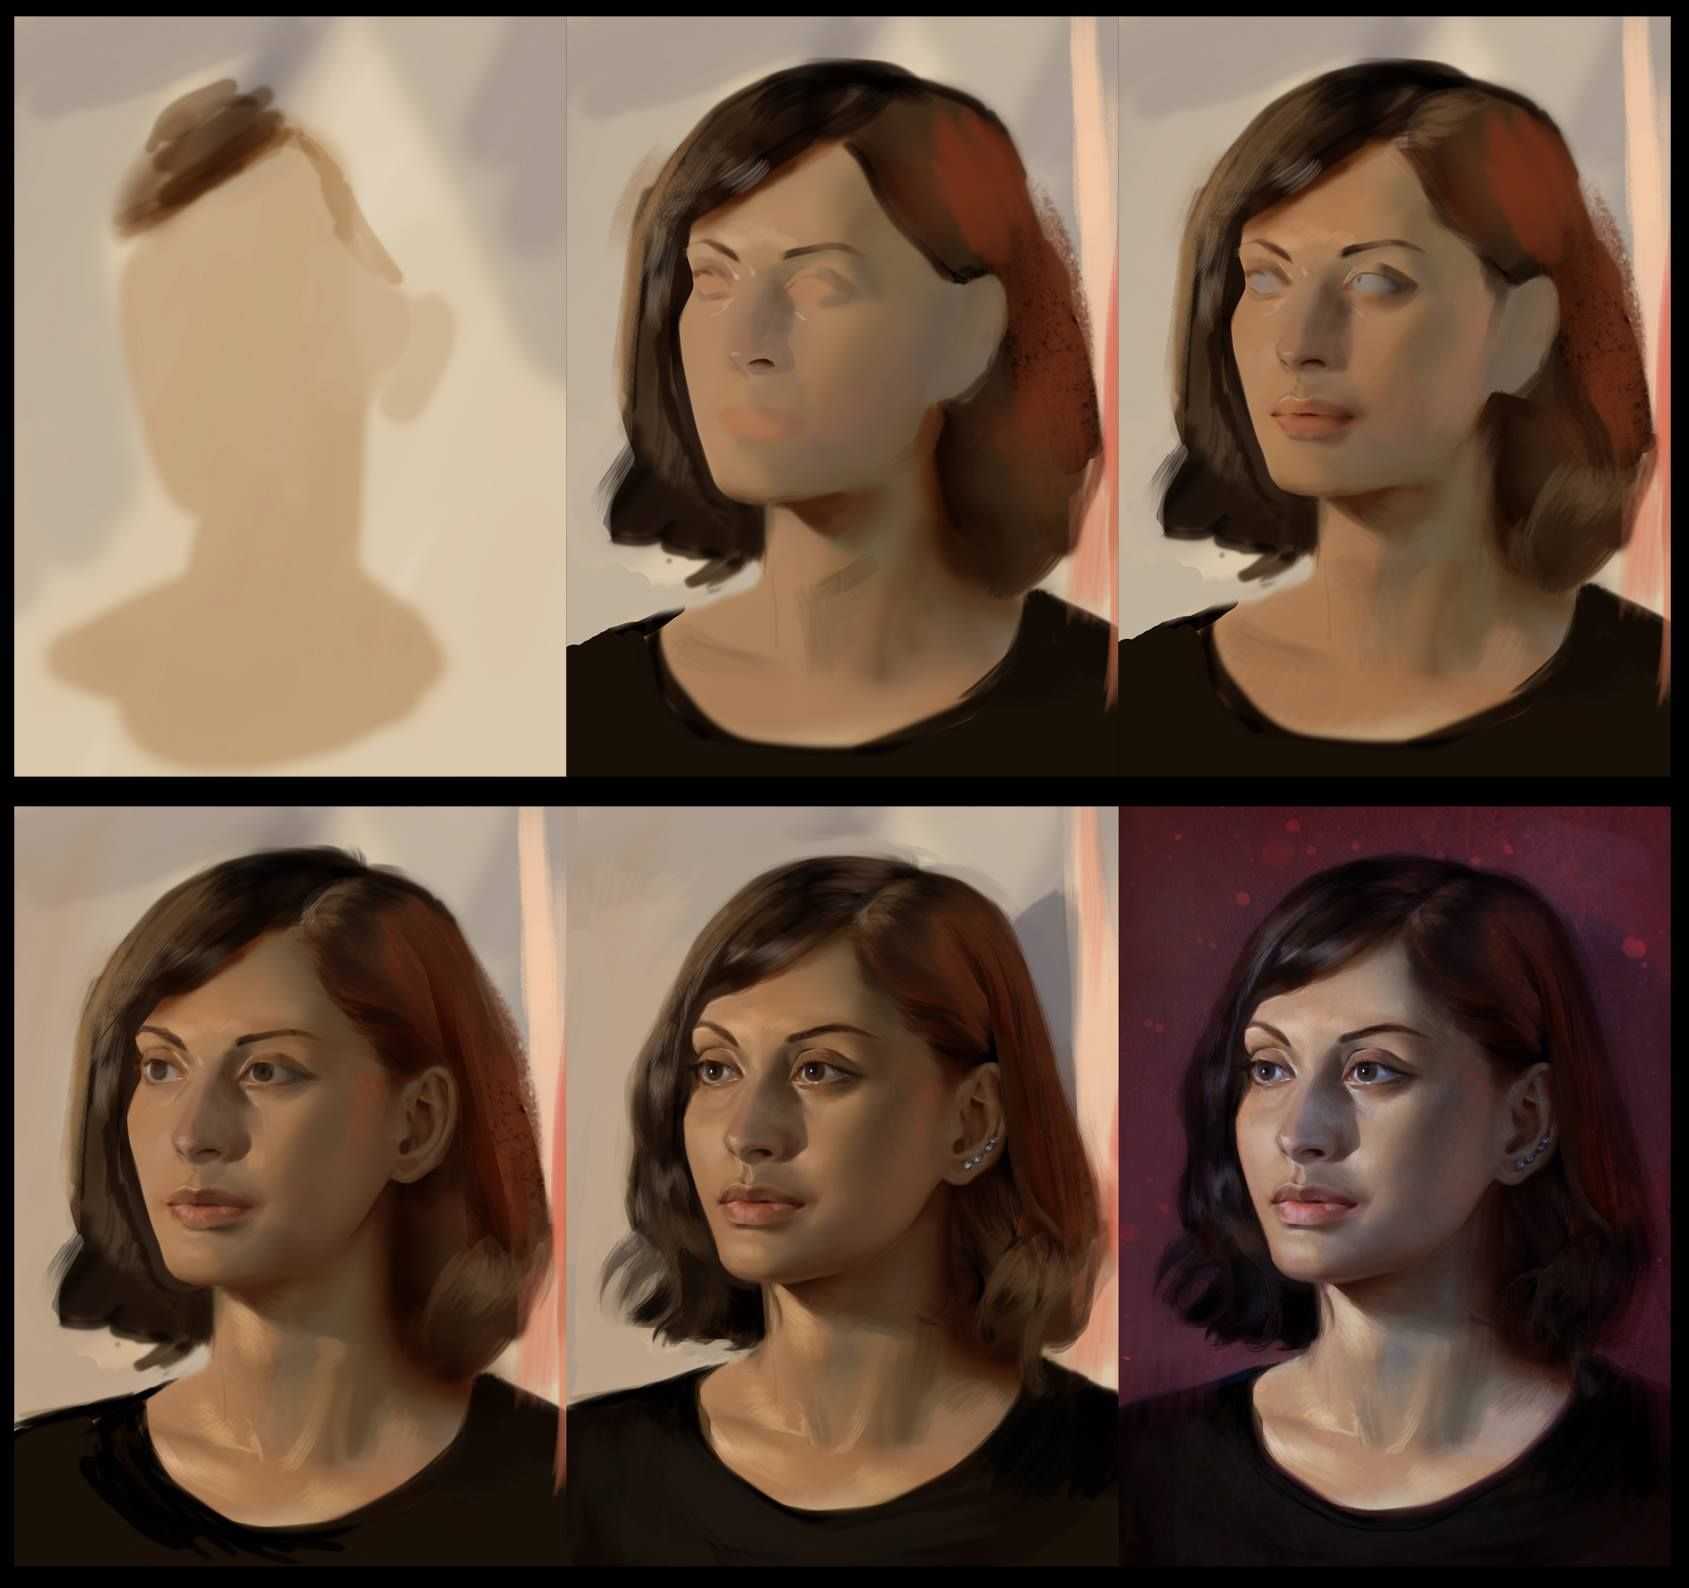 Туториал по созданию портретов | yandere simulator fanon вики | fandom